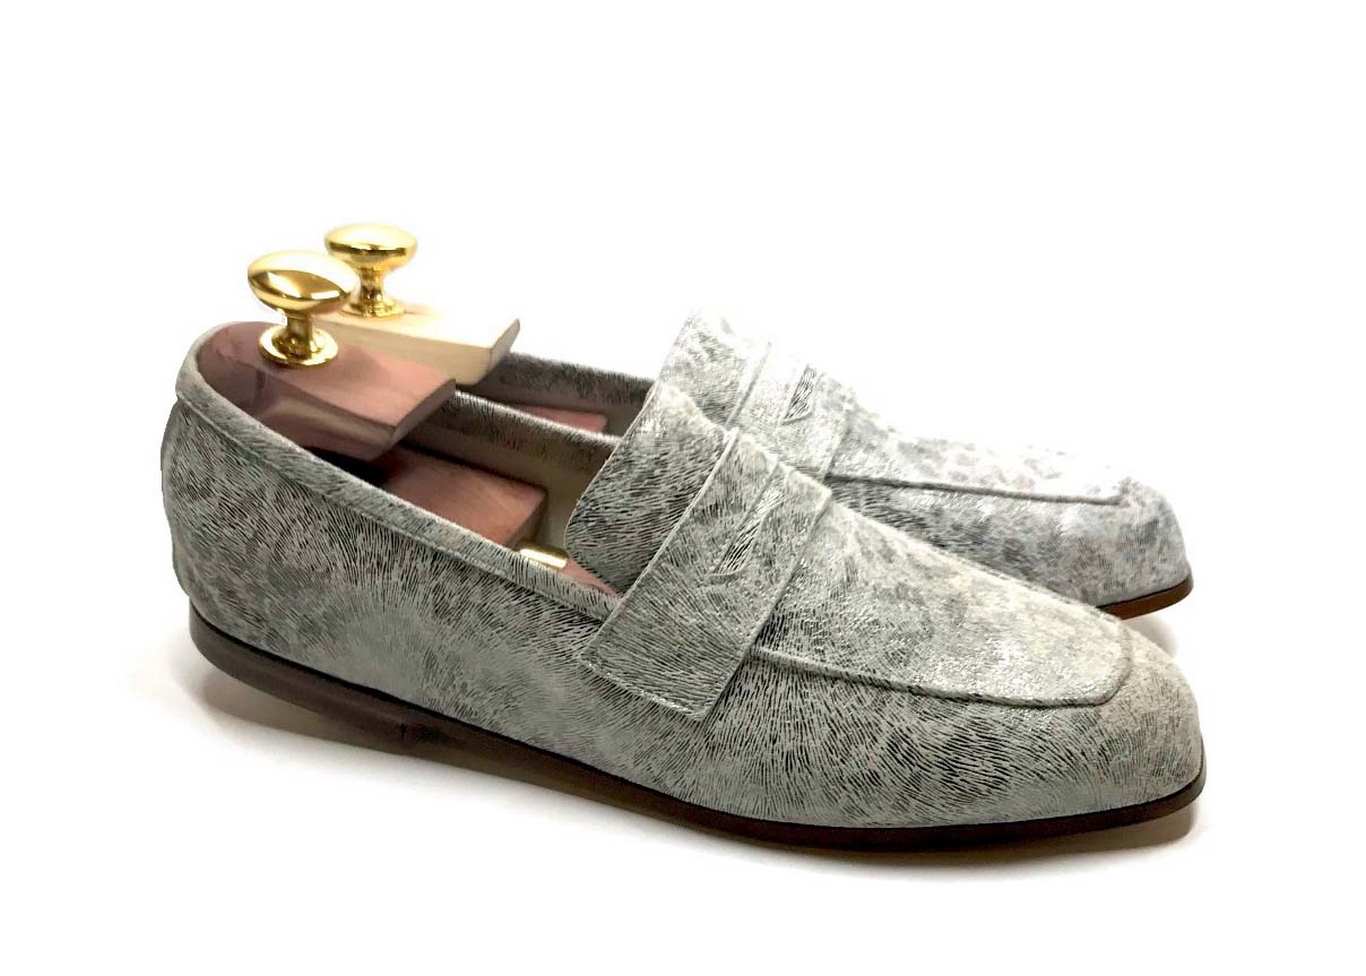 Loafers 'Tasca' in calfskin silkscreened Poller White™